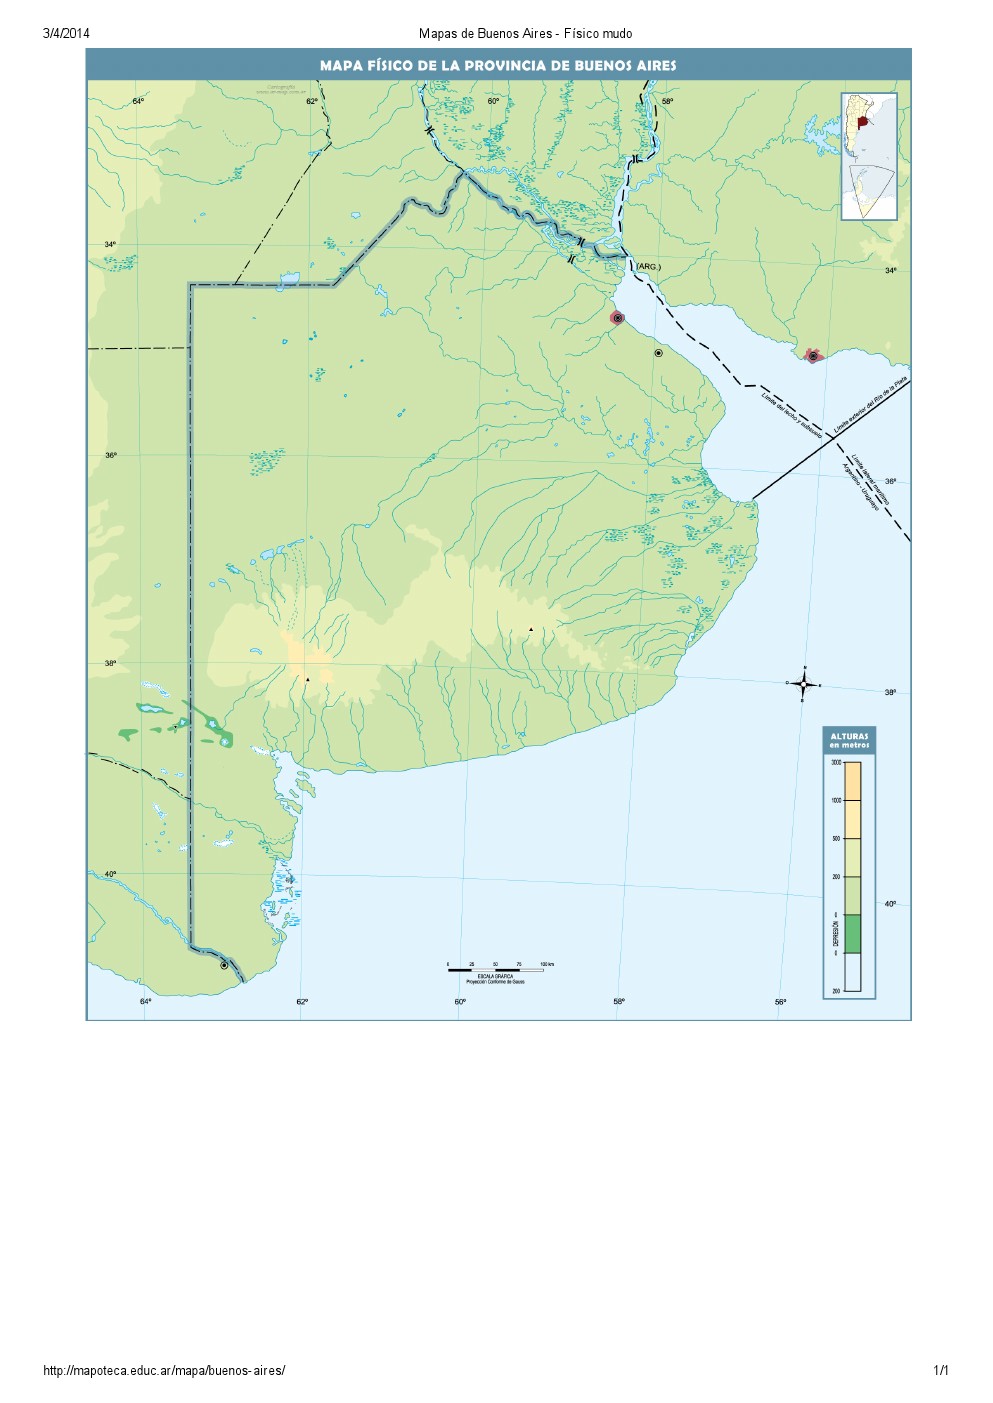 Mapa mudo de ríos y montañas de Buenos Aires. Mapoteca de Educ.ar